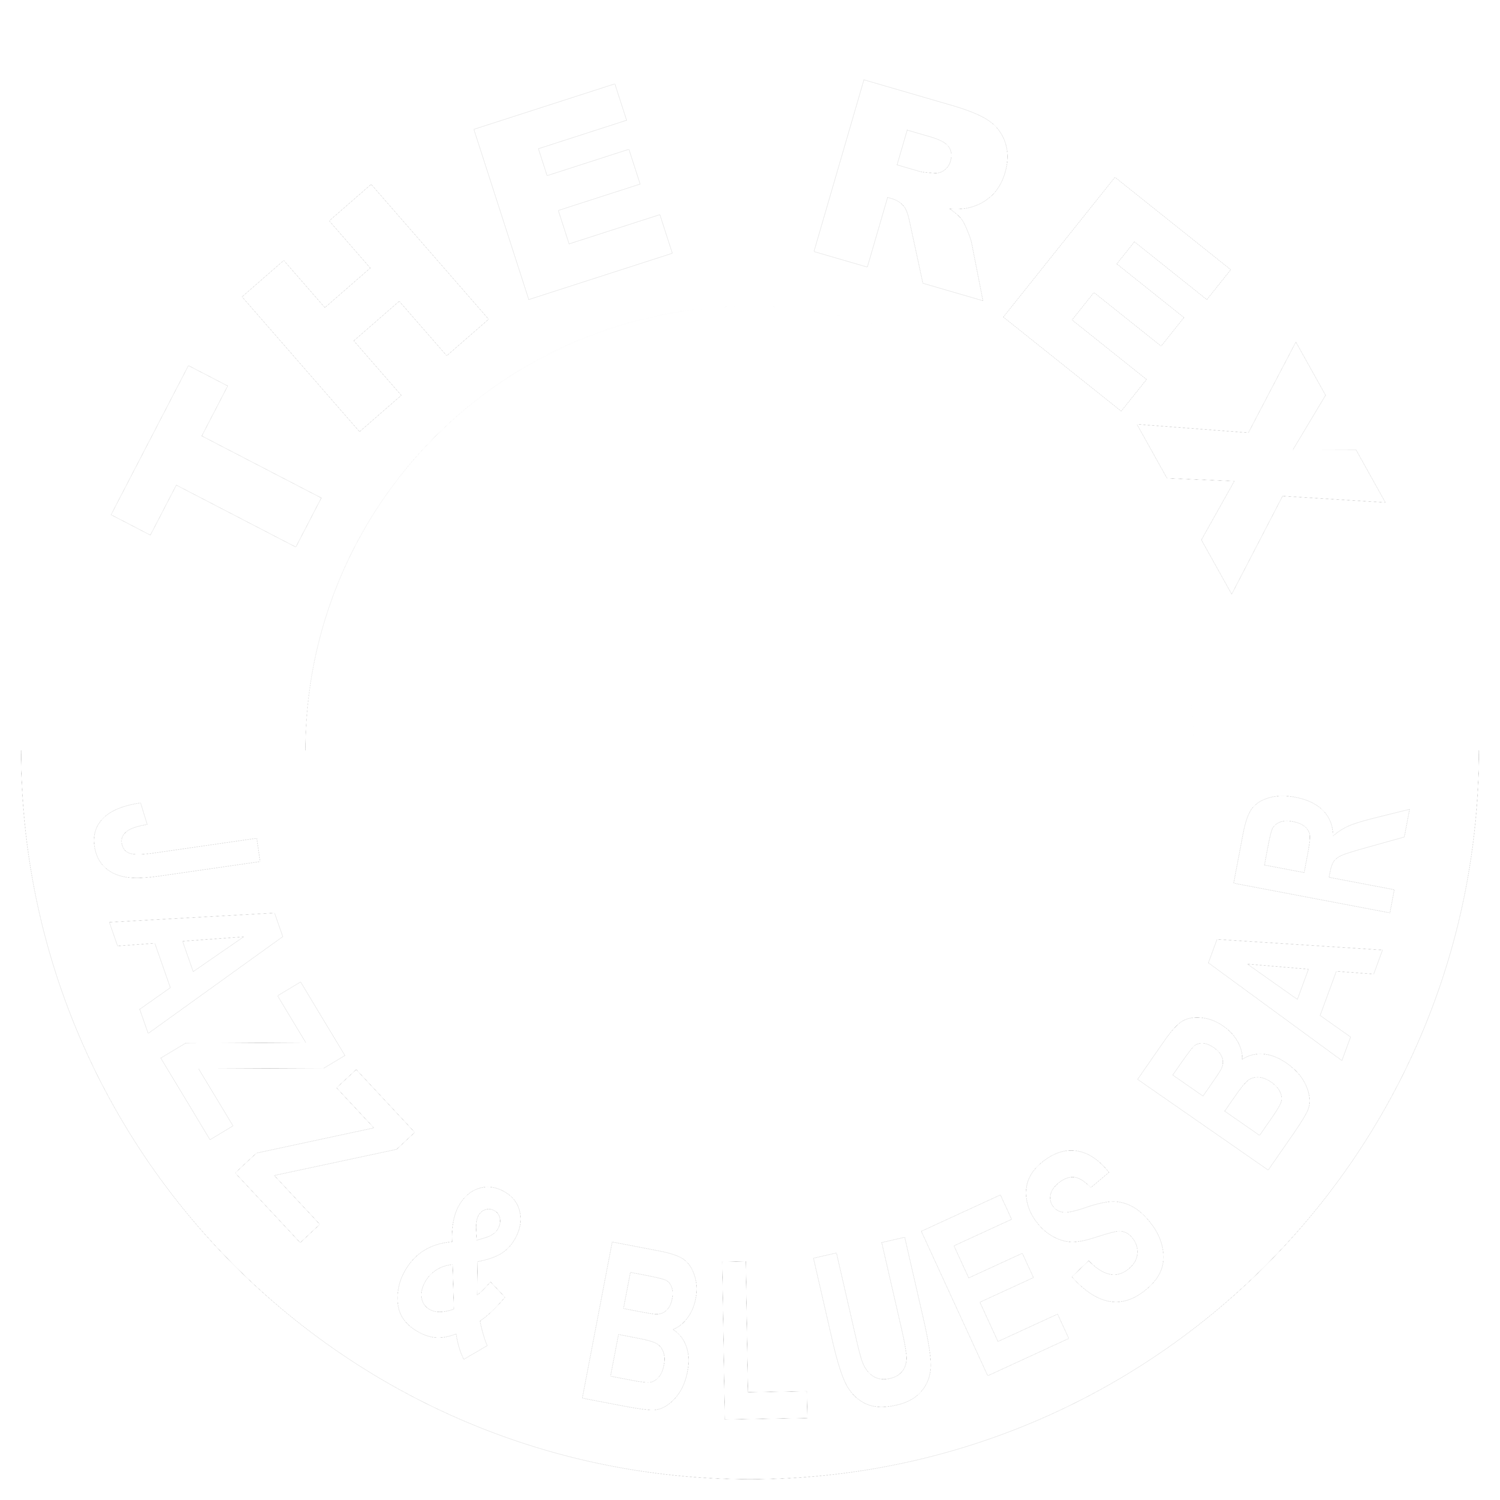 The Rex 